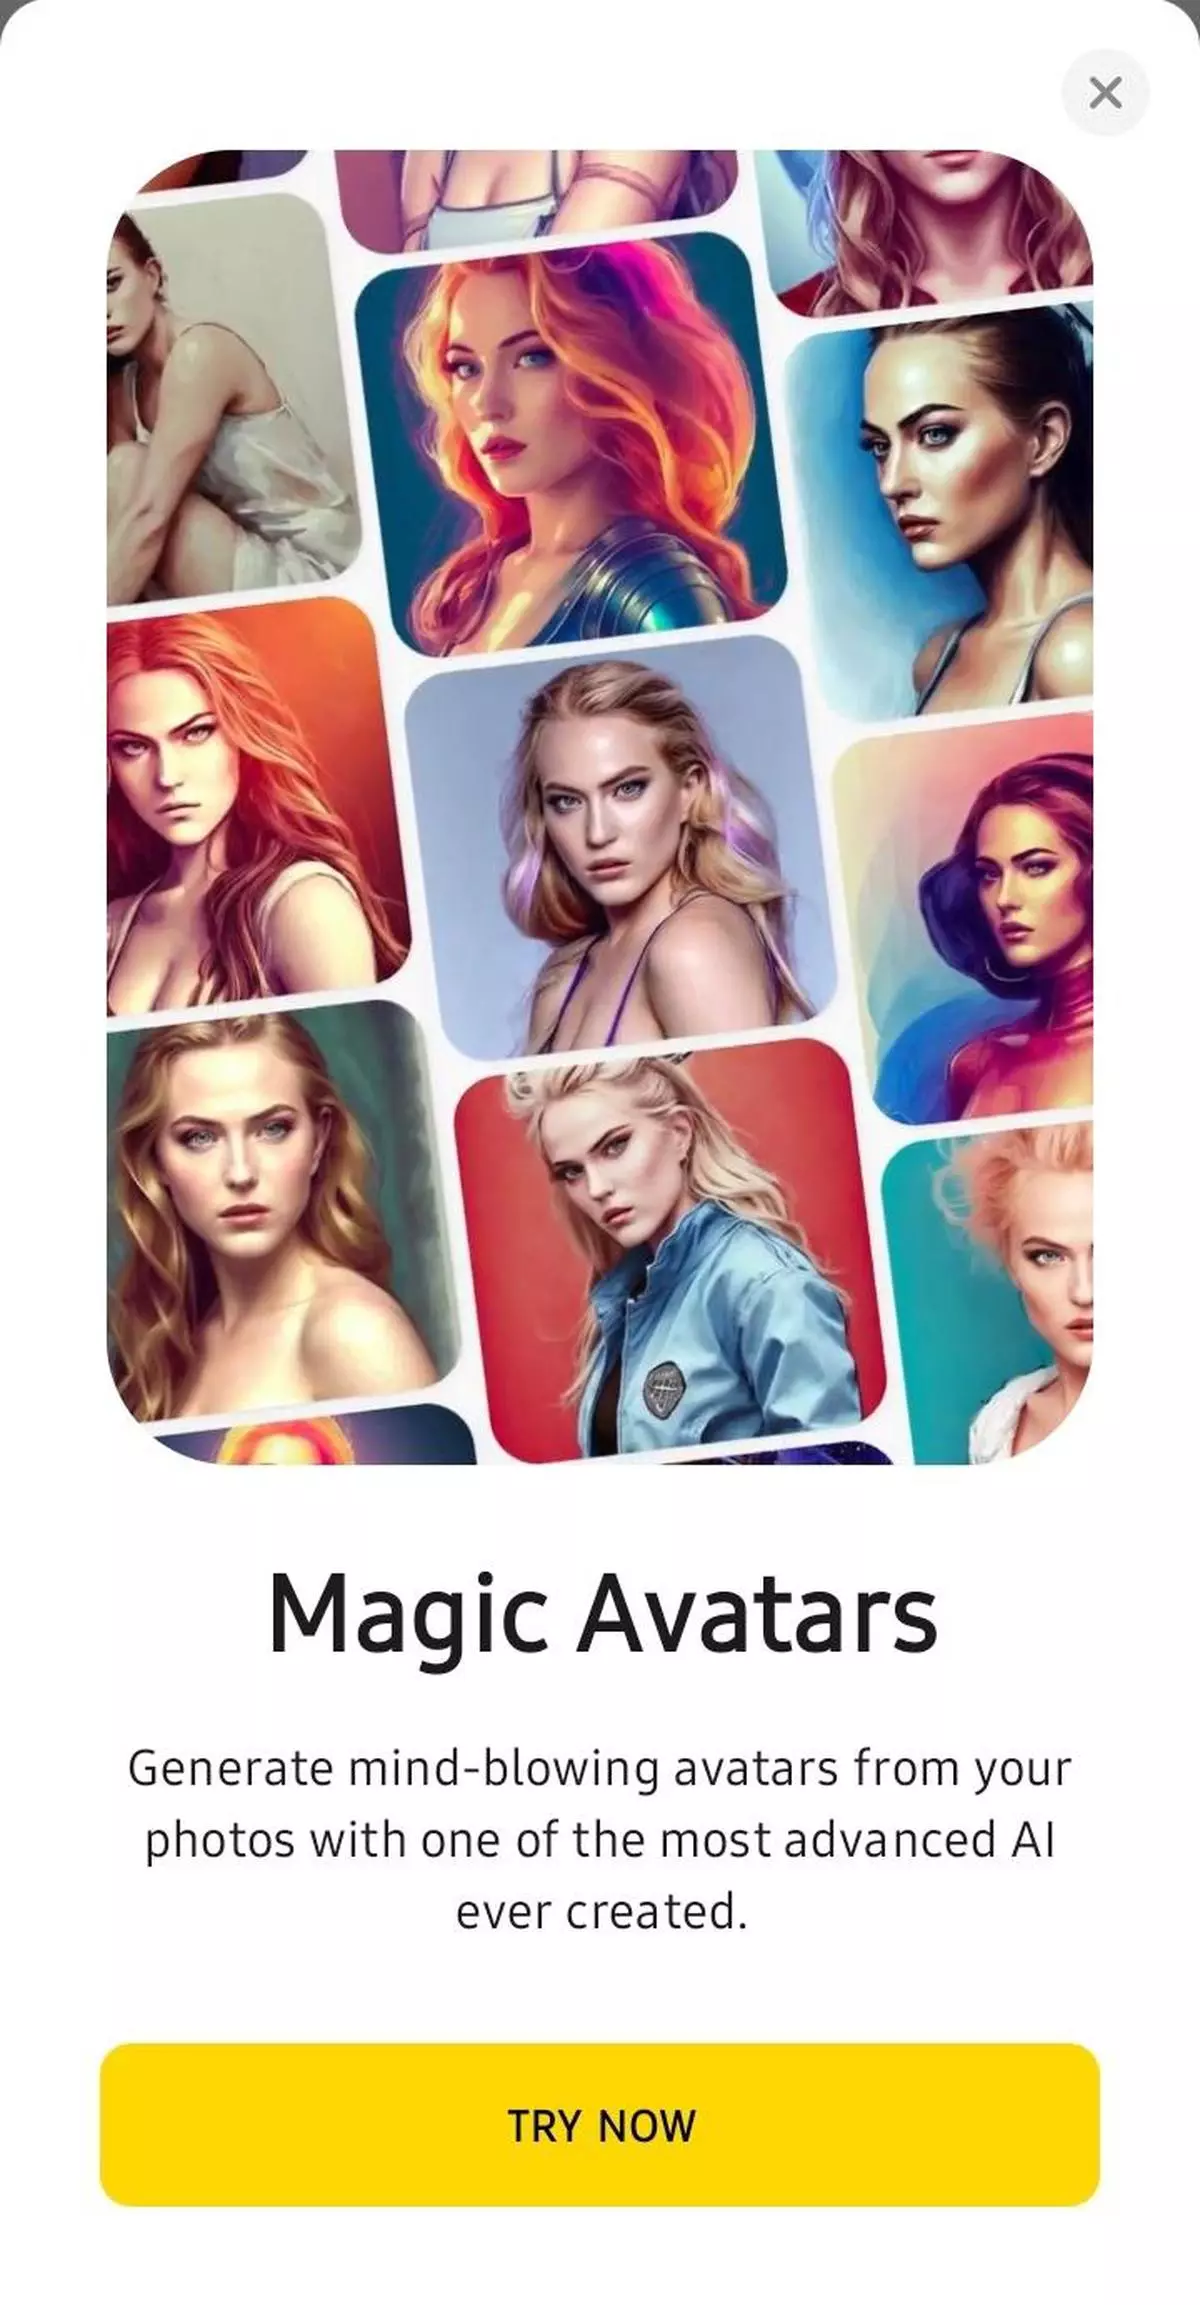 Lensa AI offers magic avatars